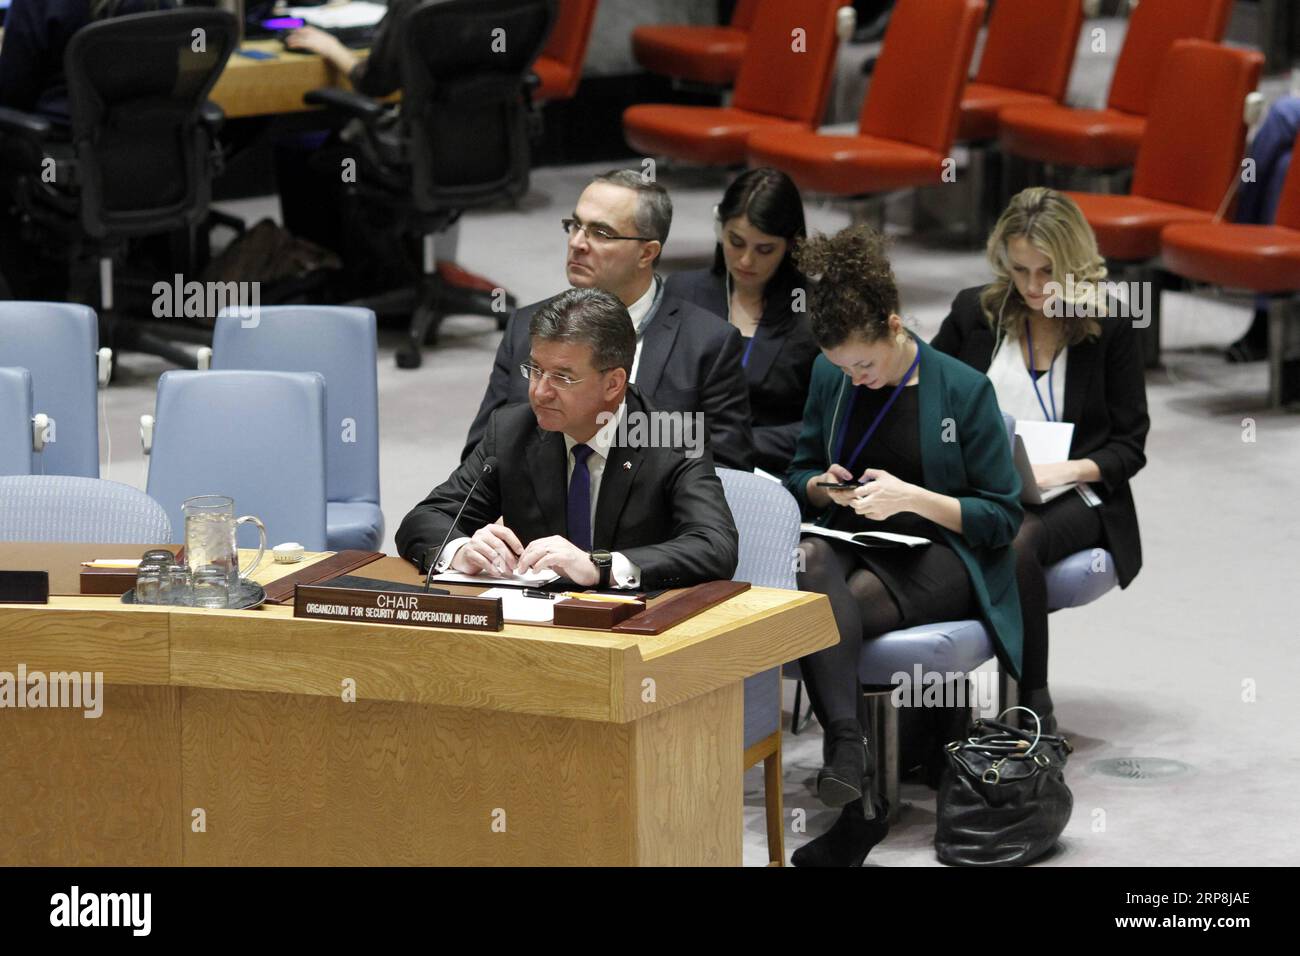 (190308) -- VEREINTE NATIONEN, 8. März 2019 -- Miroslav Lajcak (Front), Außenminister der Slowakei und amtierender Vorsitzender der Organisation für Sicherheit und Zusammenarbeit in Europa (OSZE), erläutert den Sicherheitsrat der Vereinten NATIONEN am Sitz der Vereinten NATIONEN in New York, 7. März 2019. Miroslav Lajcak sagte am Donnerstag gegenüber dem UN-Sicherheitsrat, dass Konfliktprävention, sicherere Zukunft und wirksamer Multilateralismus die drei Prioritäten dieser Organisation seien. ) VN-SICHERHEITSRAT-OSZE-UNTERRICHTUNG LixMuzi PUBLICATIONxNOTxINxCHN Stockfoto